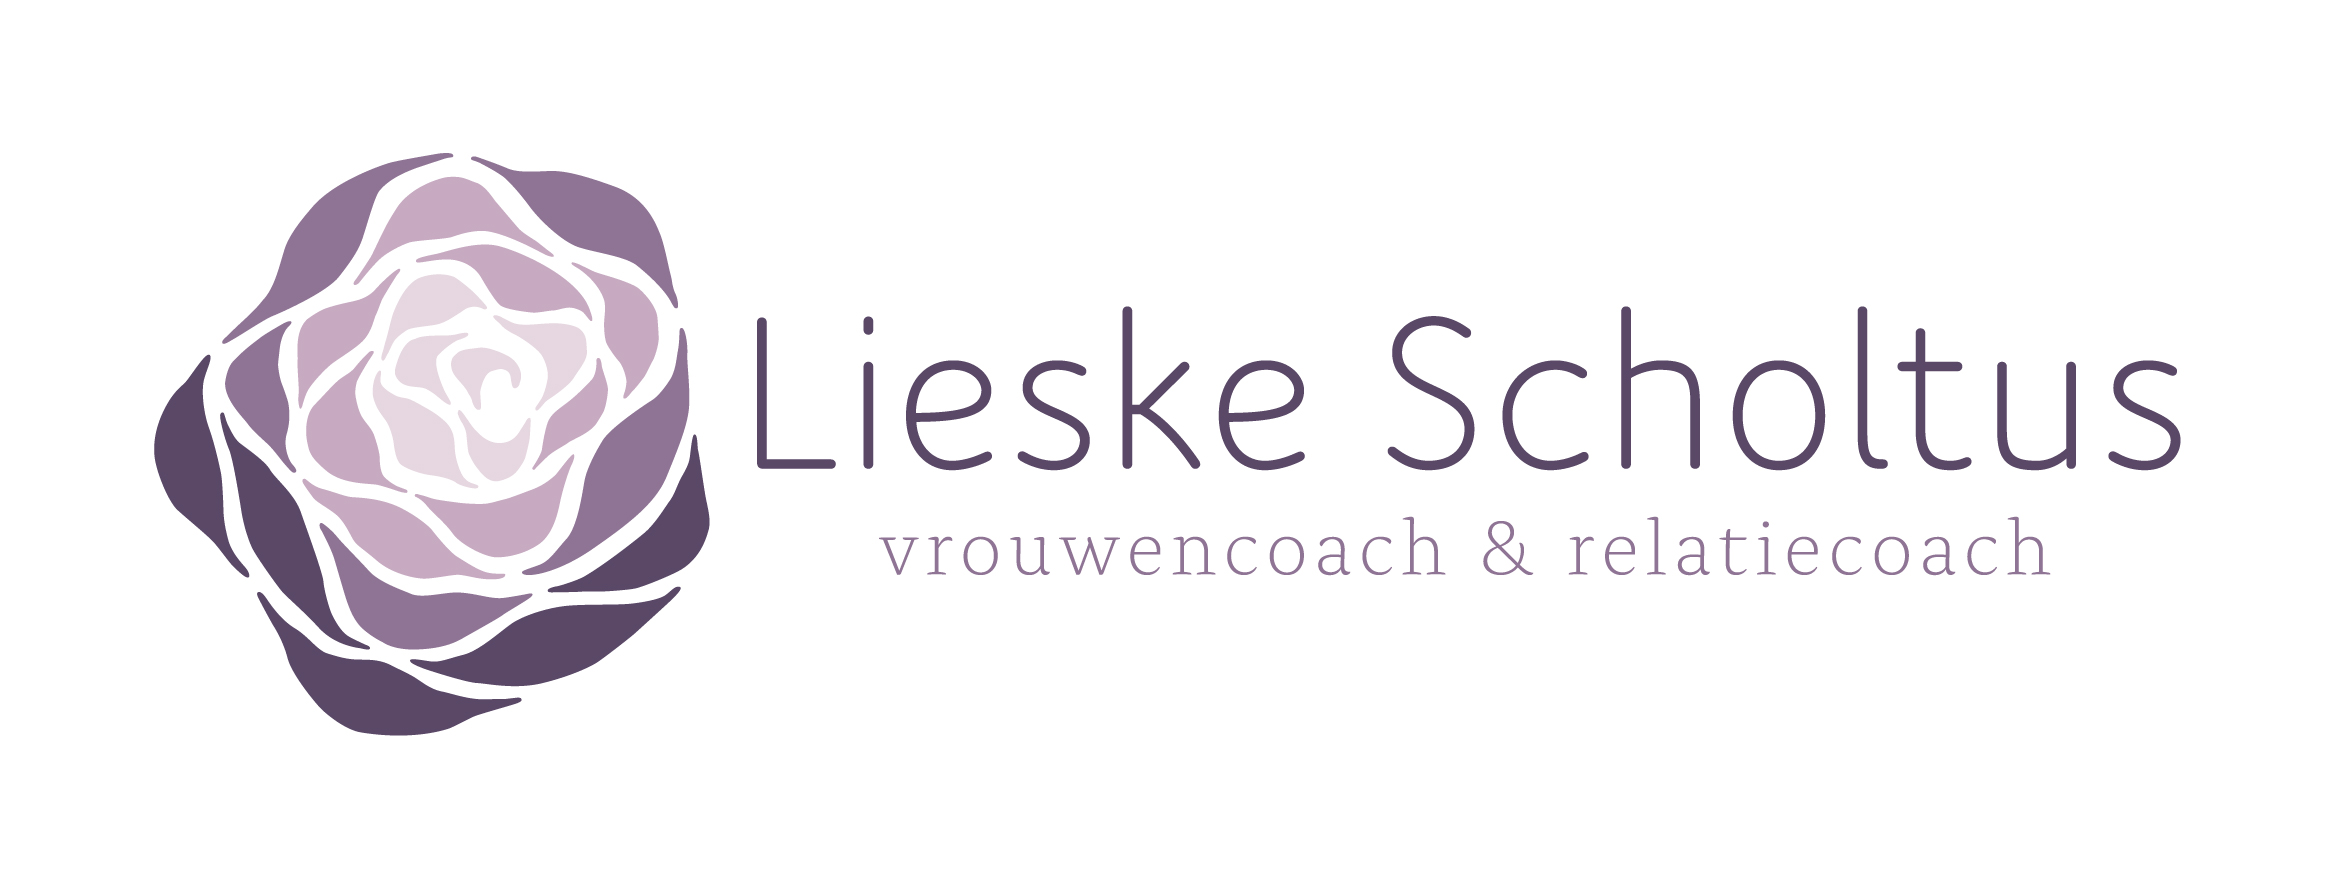 Lieske Scholtus – wandelcoaching voor vrouwen